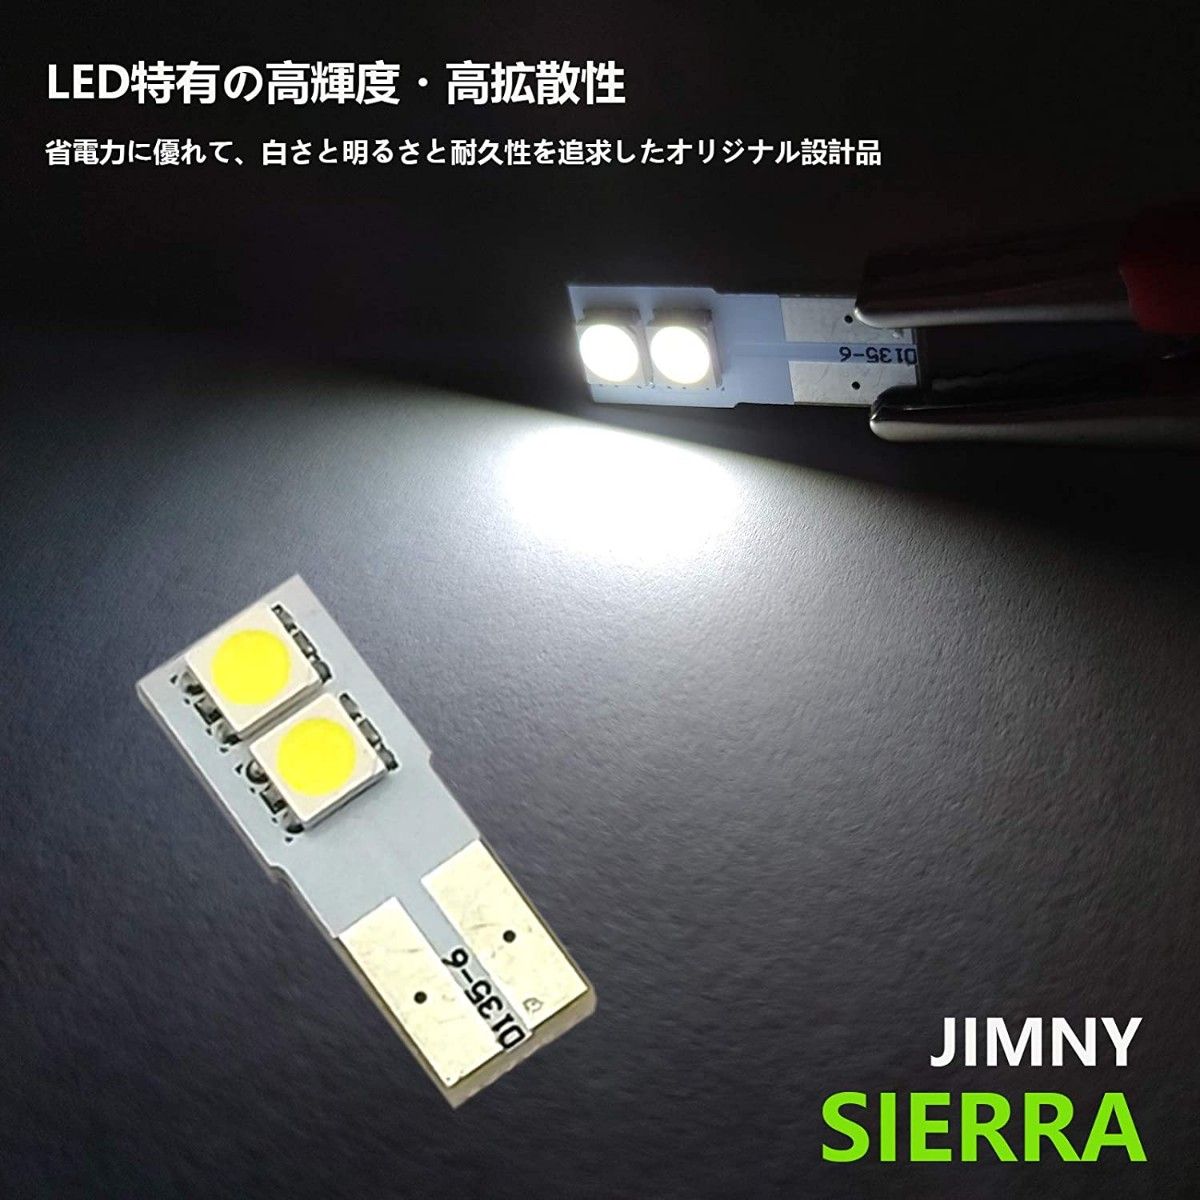 JB64W JB74W LEDルームランプ スズキ 新型ジムニー 専用設計 白色